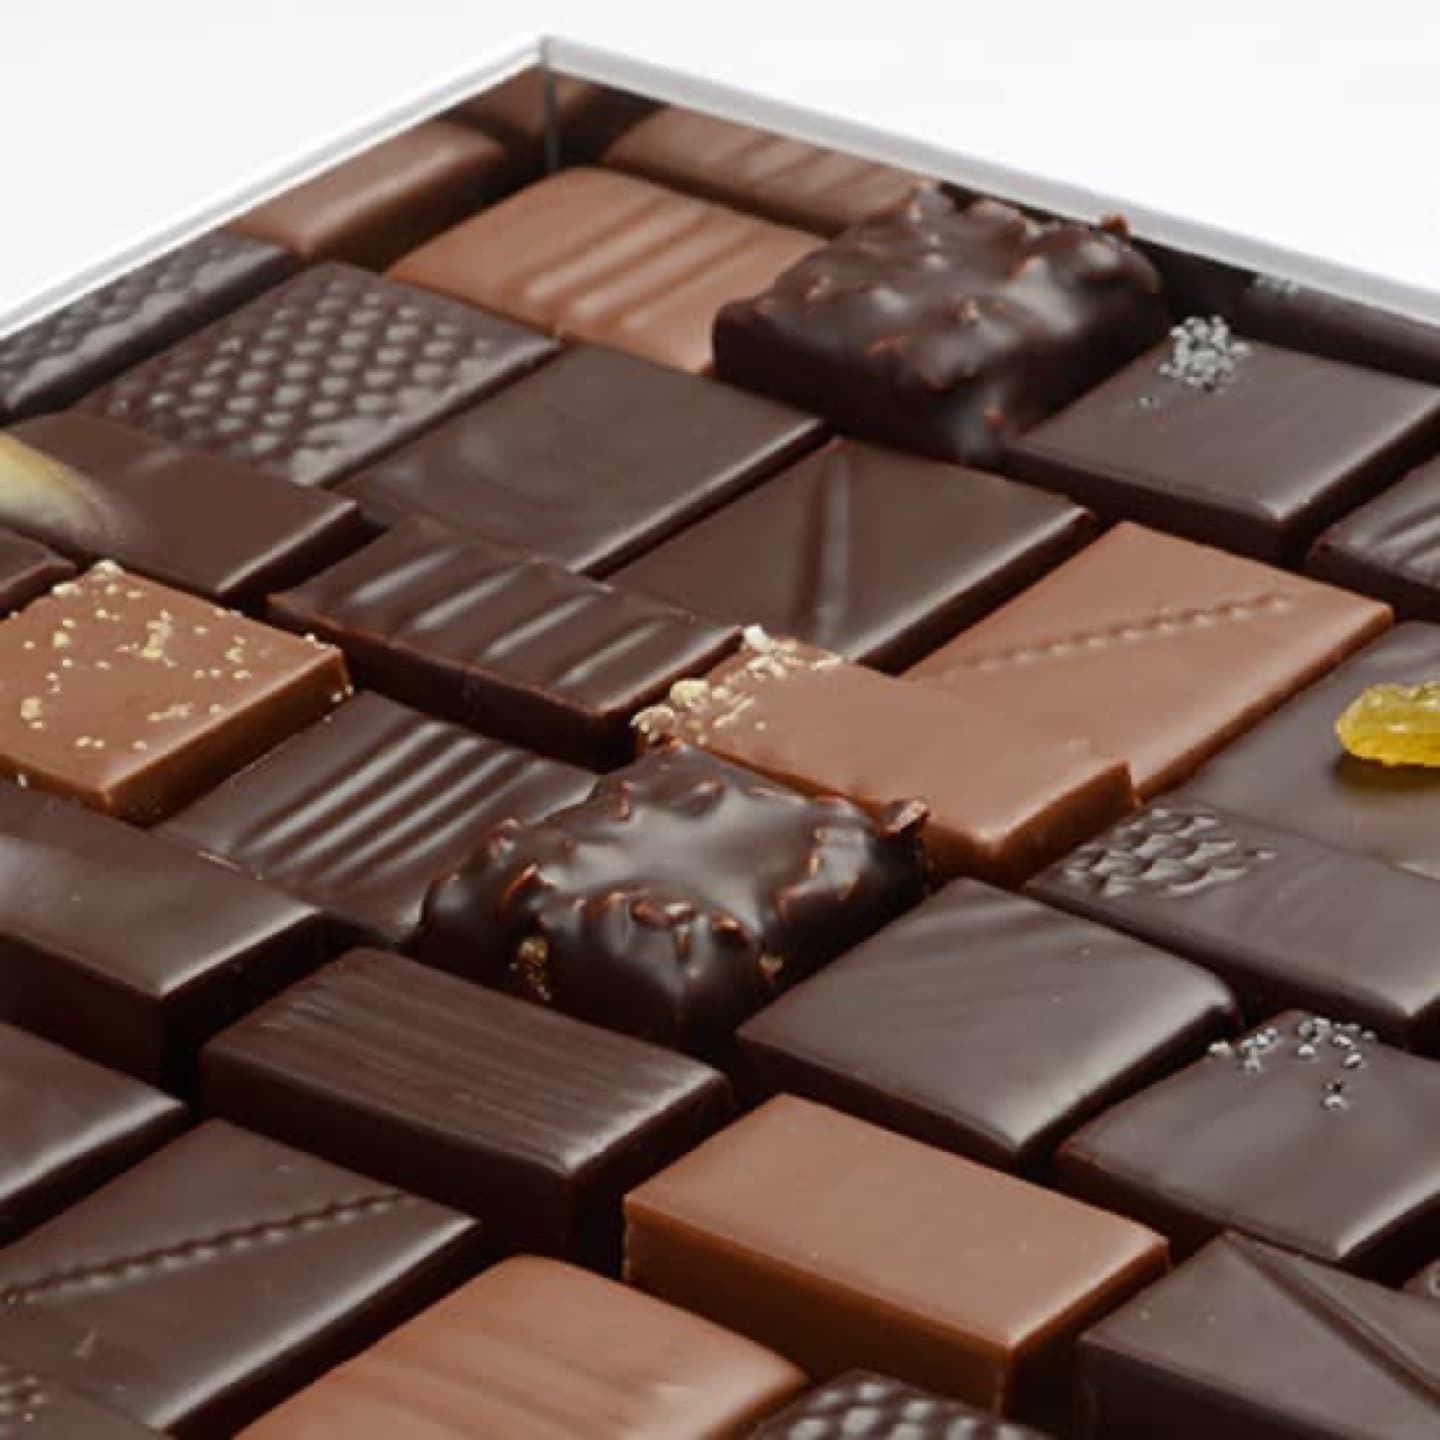 Assortiment Chocolats Noir 750g - 80 pièces